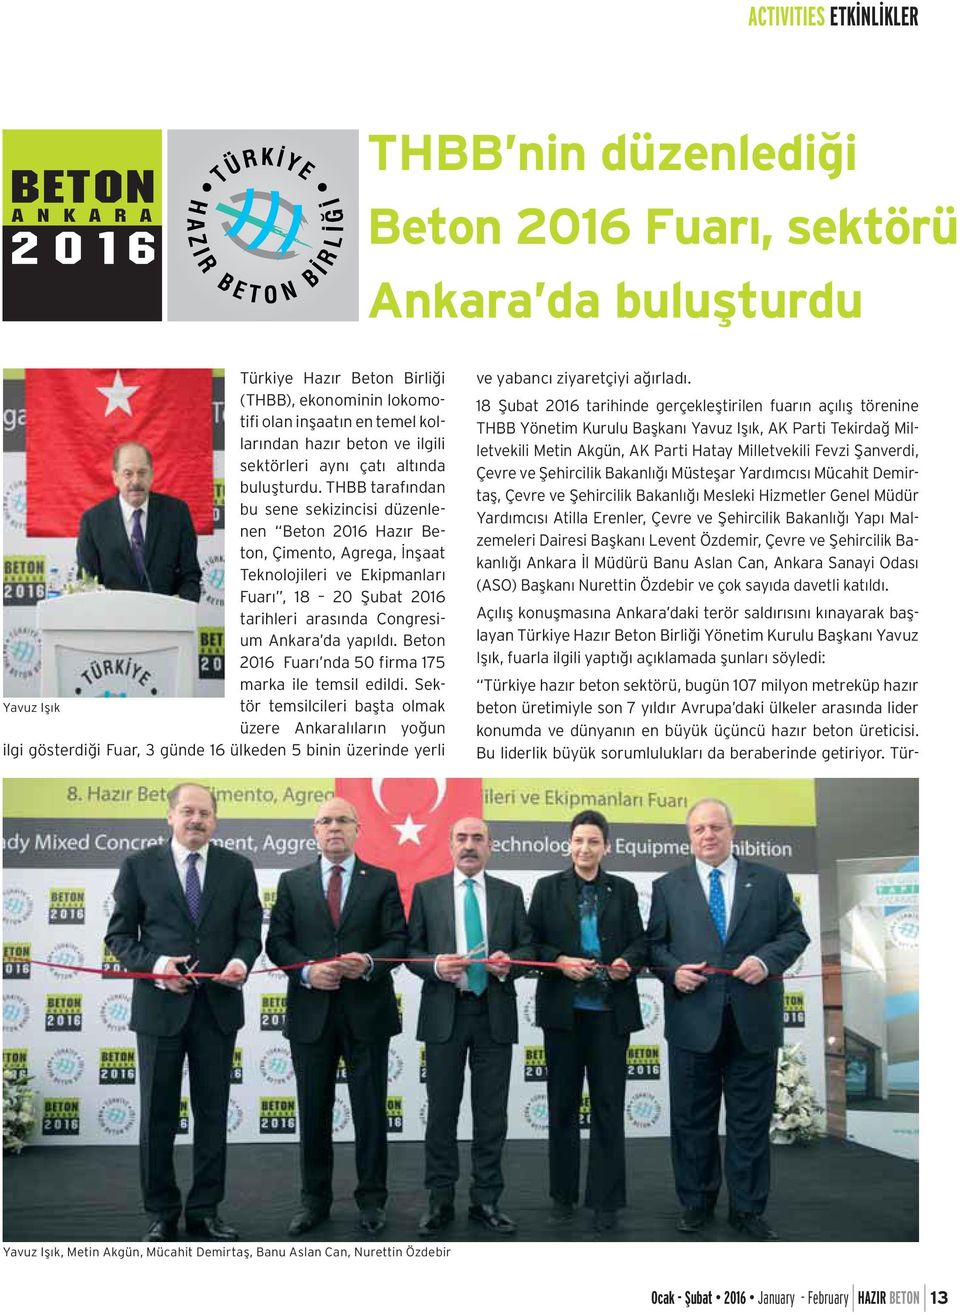 THBB tarafından bu sene sekizincisi düzenlenen Beton 2016 Hazır Beton, Çimento, Agrega, İnşaat Teknolojileri ve Ekipmanları Fuarı, 18 20 Şubat 2016 tarihleri arasında Congresium Ankara da yapıldı.